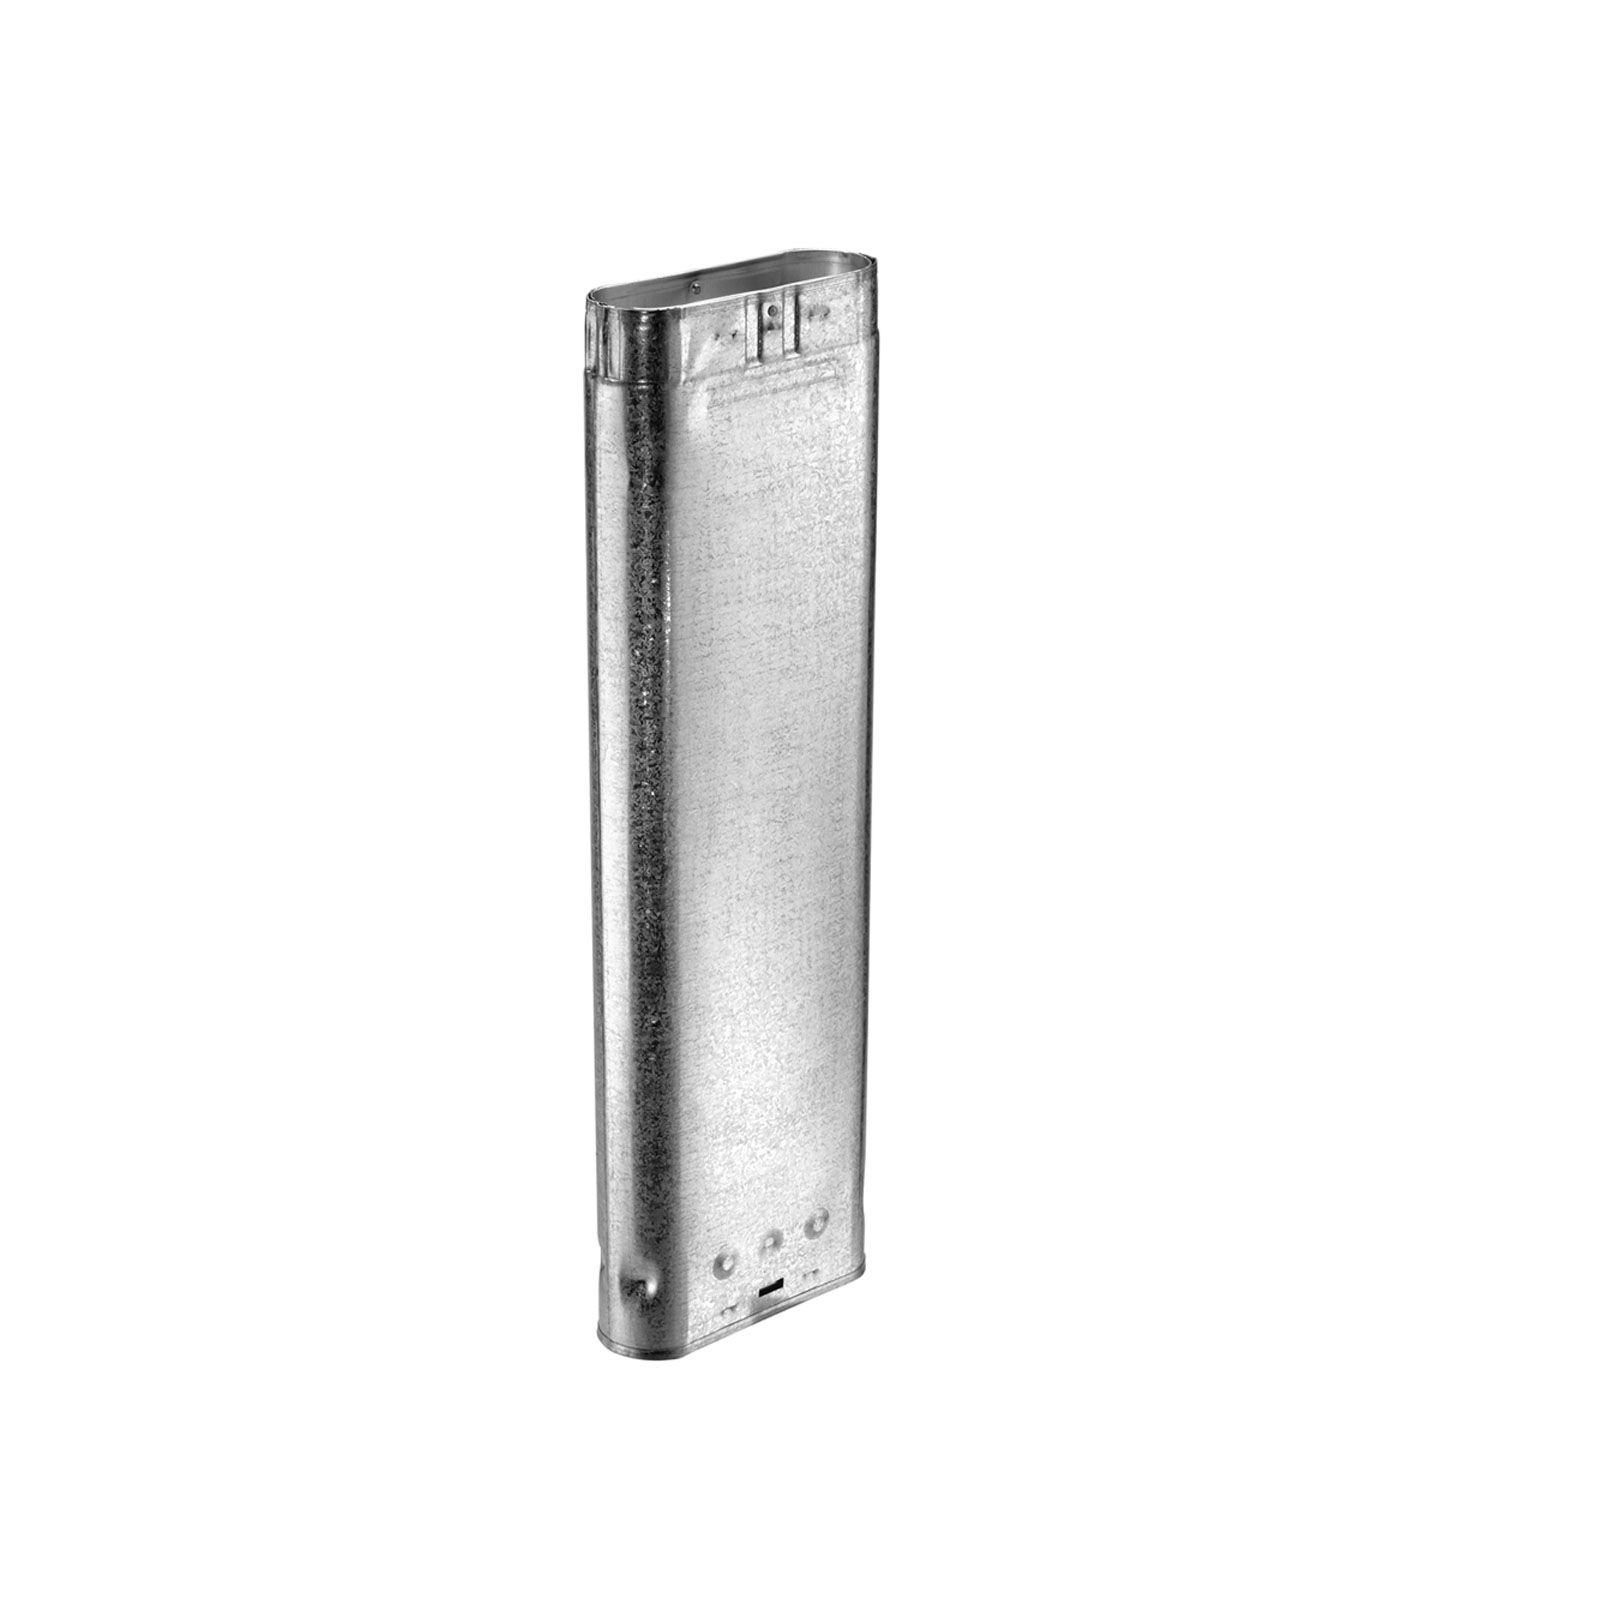 DuraVent 4GW12 - Aluminum 12" Length Oval Rigid Pipe with 4" Inner Diameter